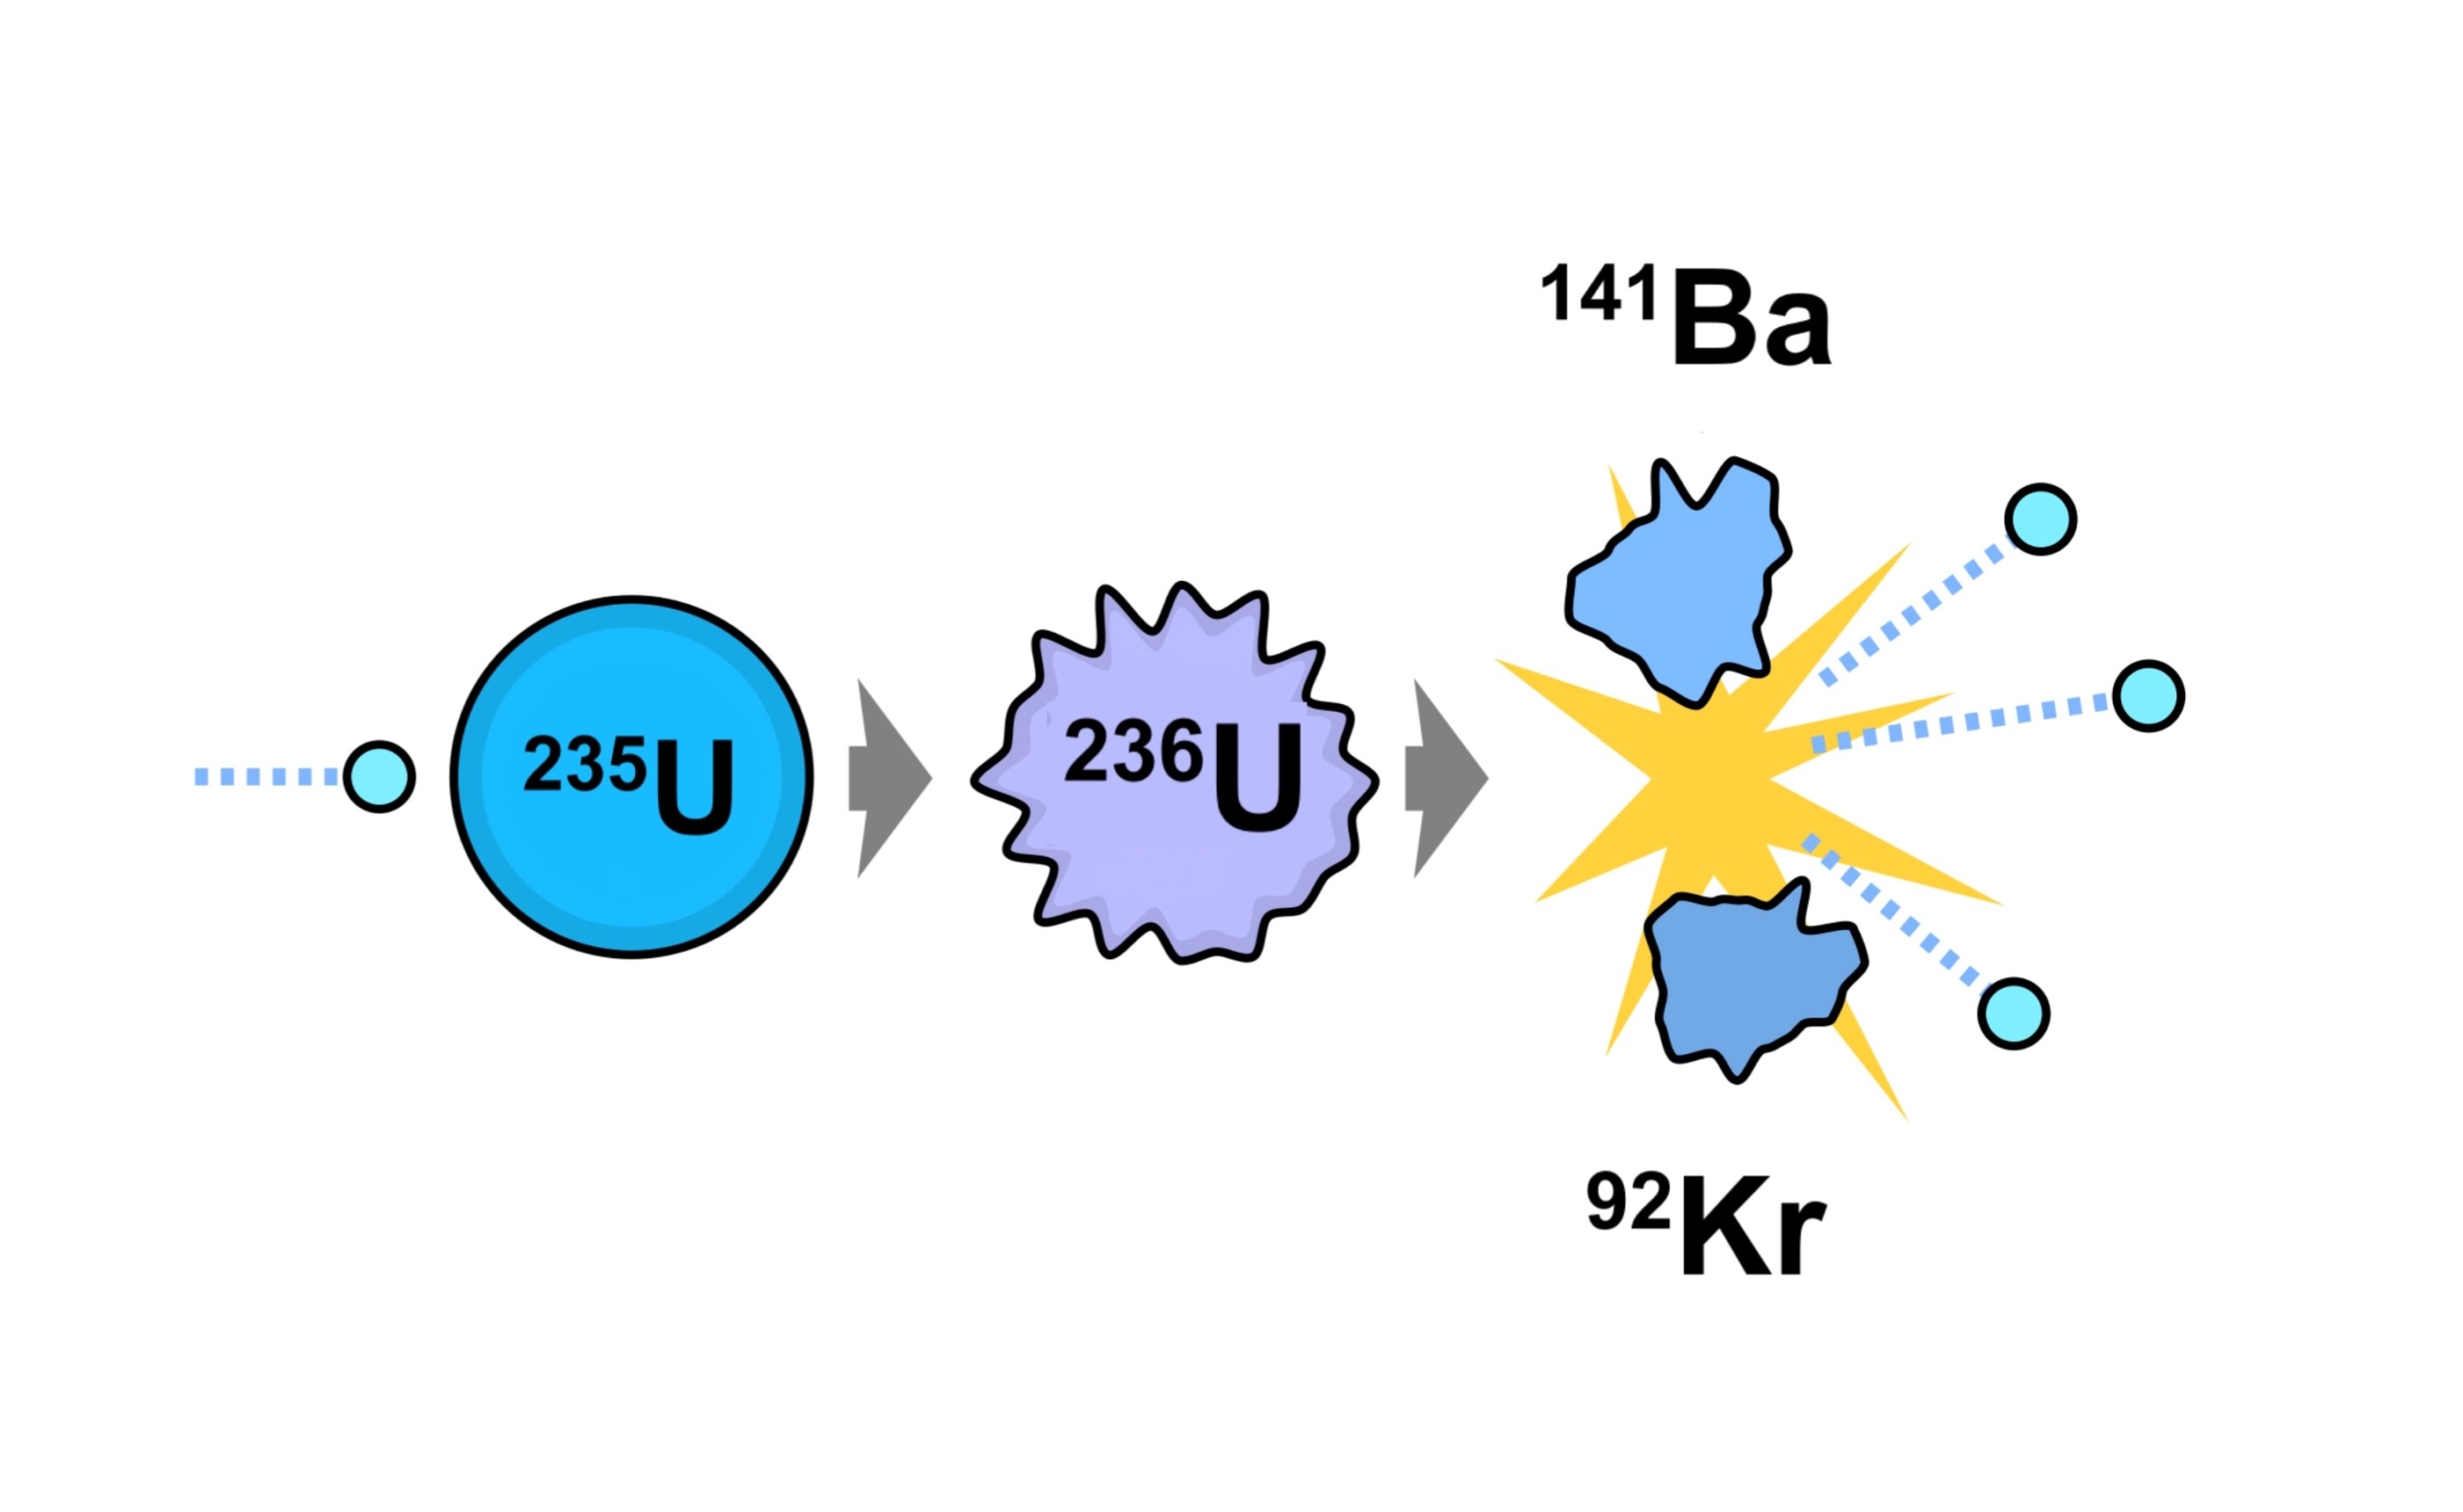 Lančana reakcija urana-235 koja dovodi do [-] nuklearne fisijske bombe, ali također stvara energiju unutar nuklearnog reaktora, pokreće se apsorpcijom neutrona kao prvim korakom, što rezultira proizvodnjom tri dodatna slobodna neutrona. E. SIEGEL, FASTFISSION / WIKIMEDIA COMMONS